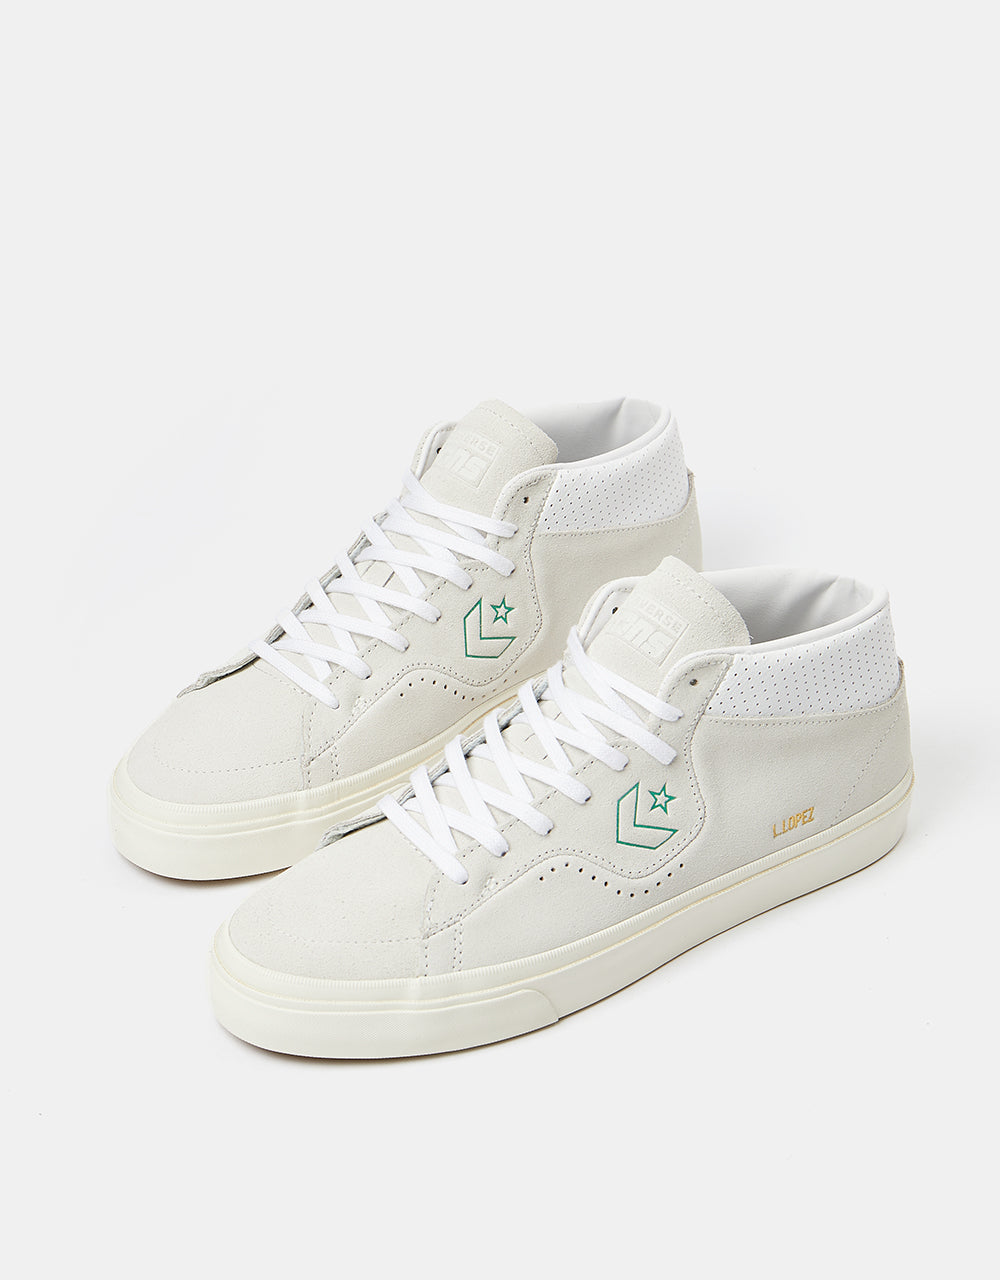 Converse Louie Lopez Pro Mid Skate Shoes - Vaporous Gray/White/Egret